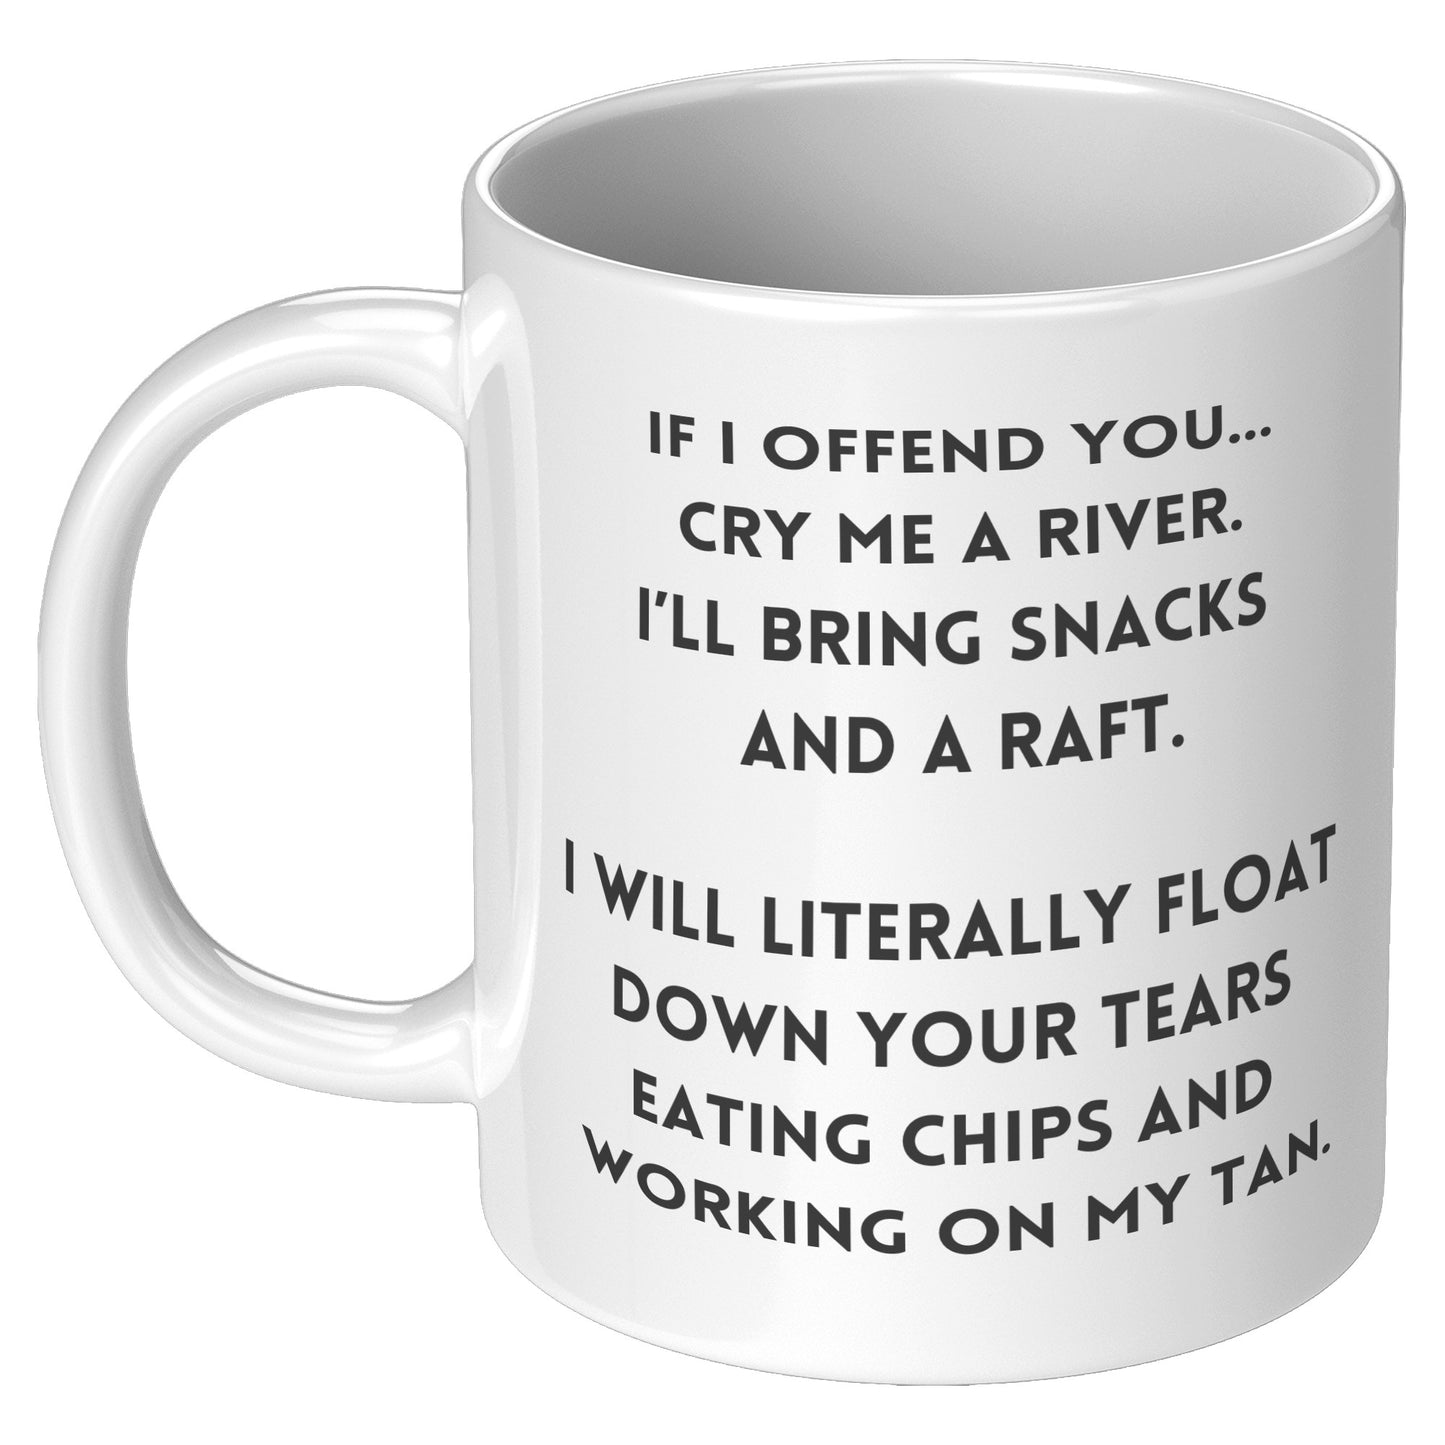 If I Offend You... Coffee Mug